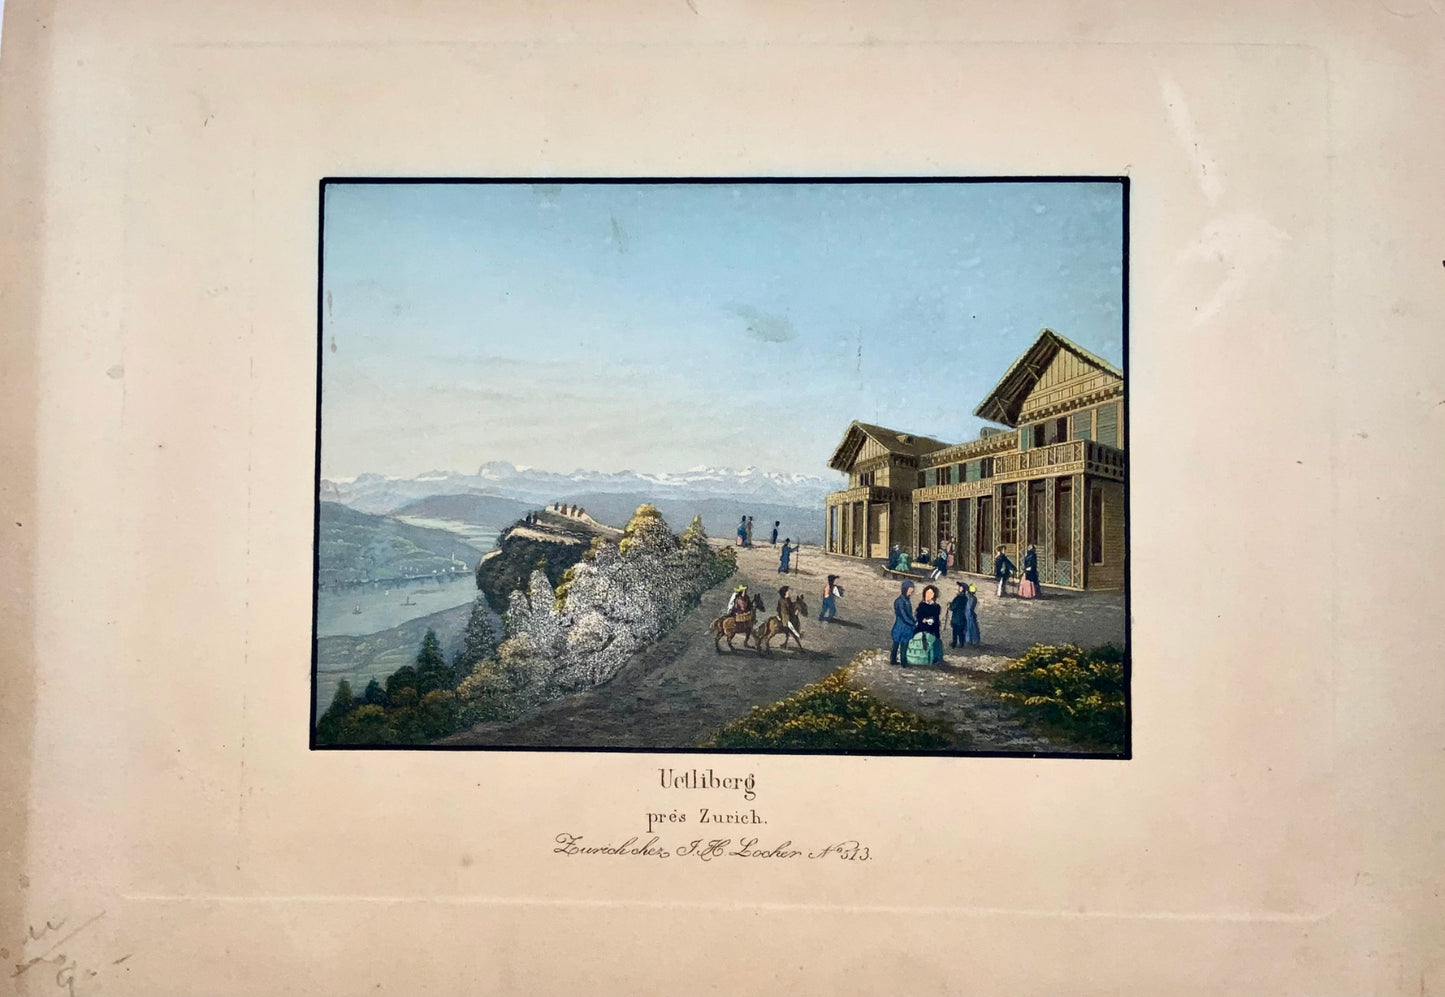 1850 J.H. Locher, Uetliberg by Zurich, Switzerland, coloured aquatint